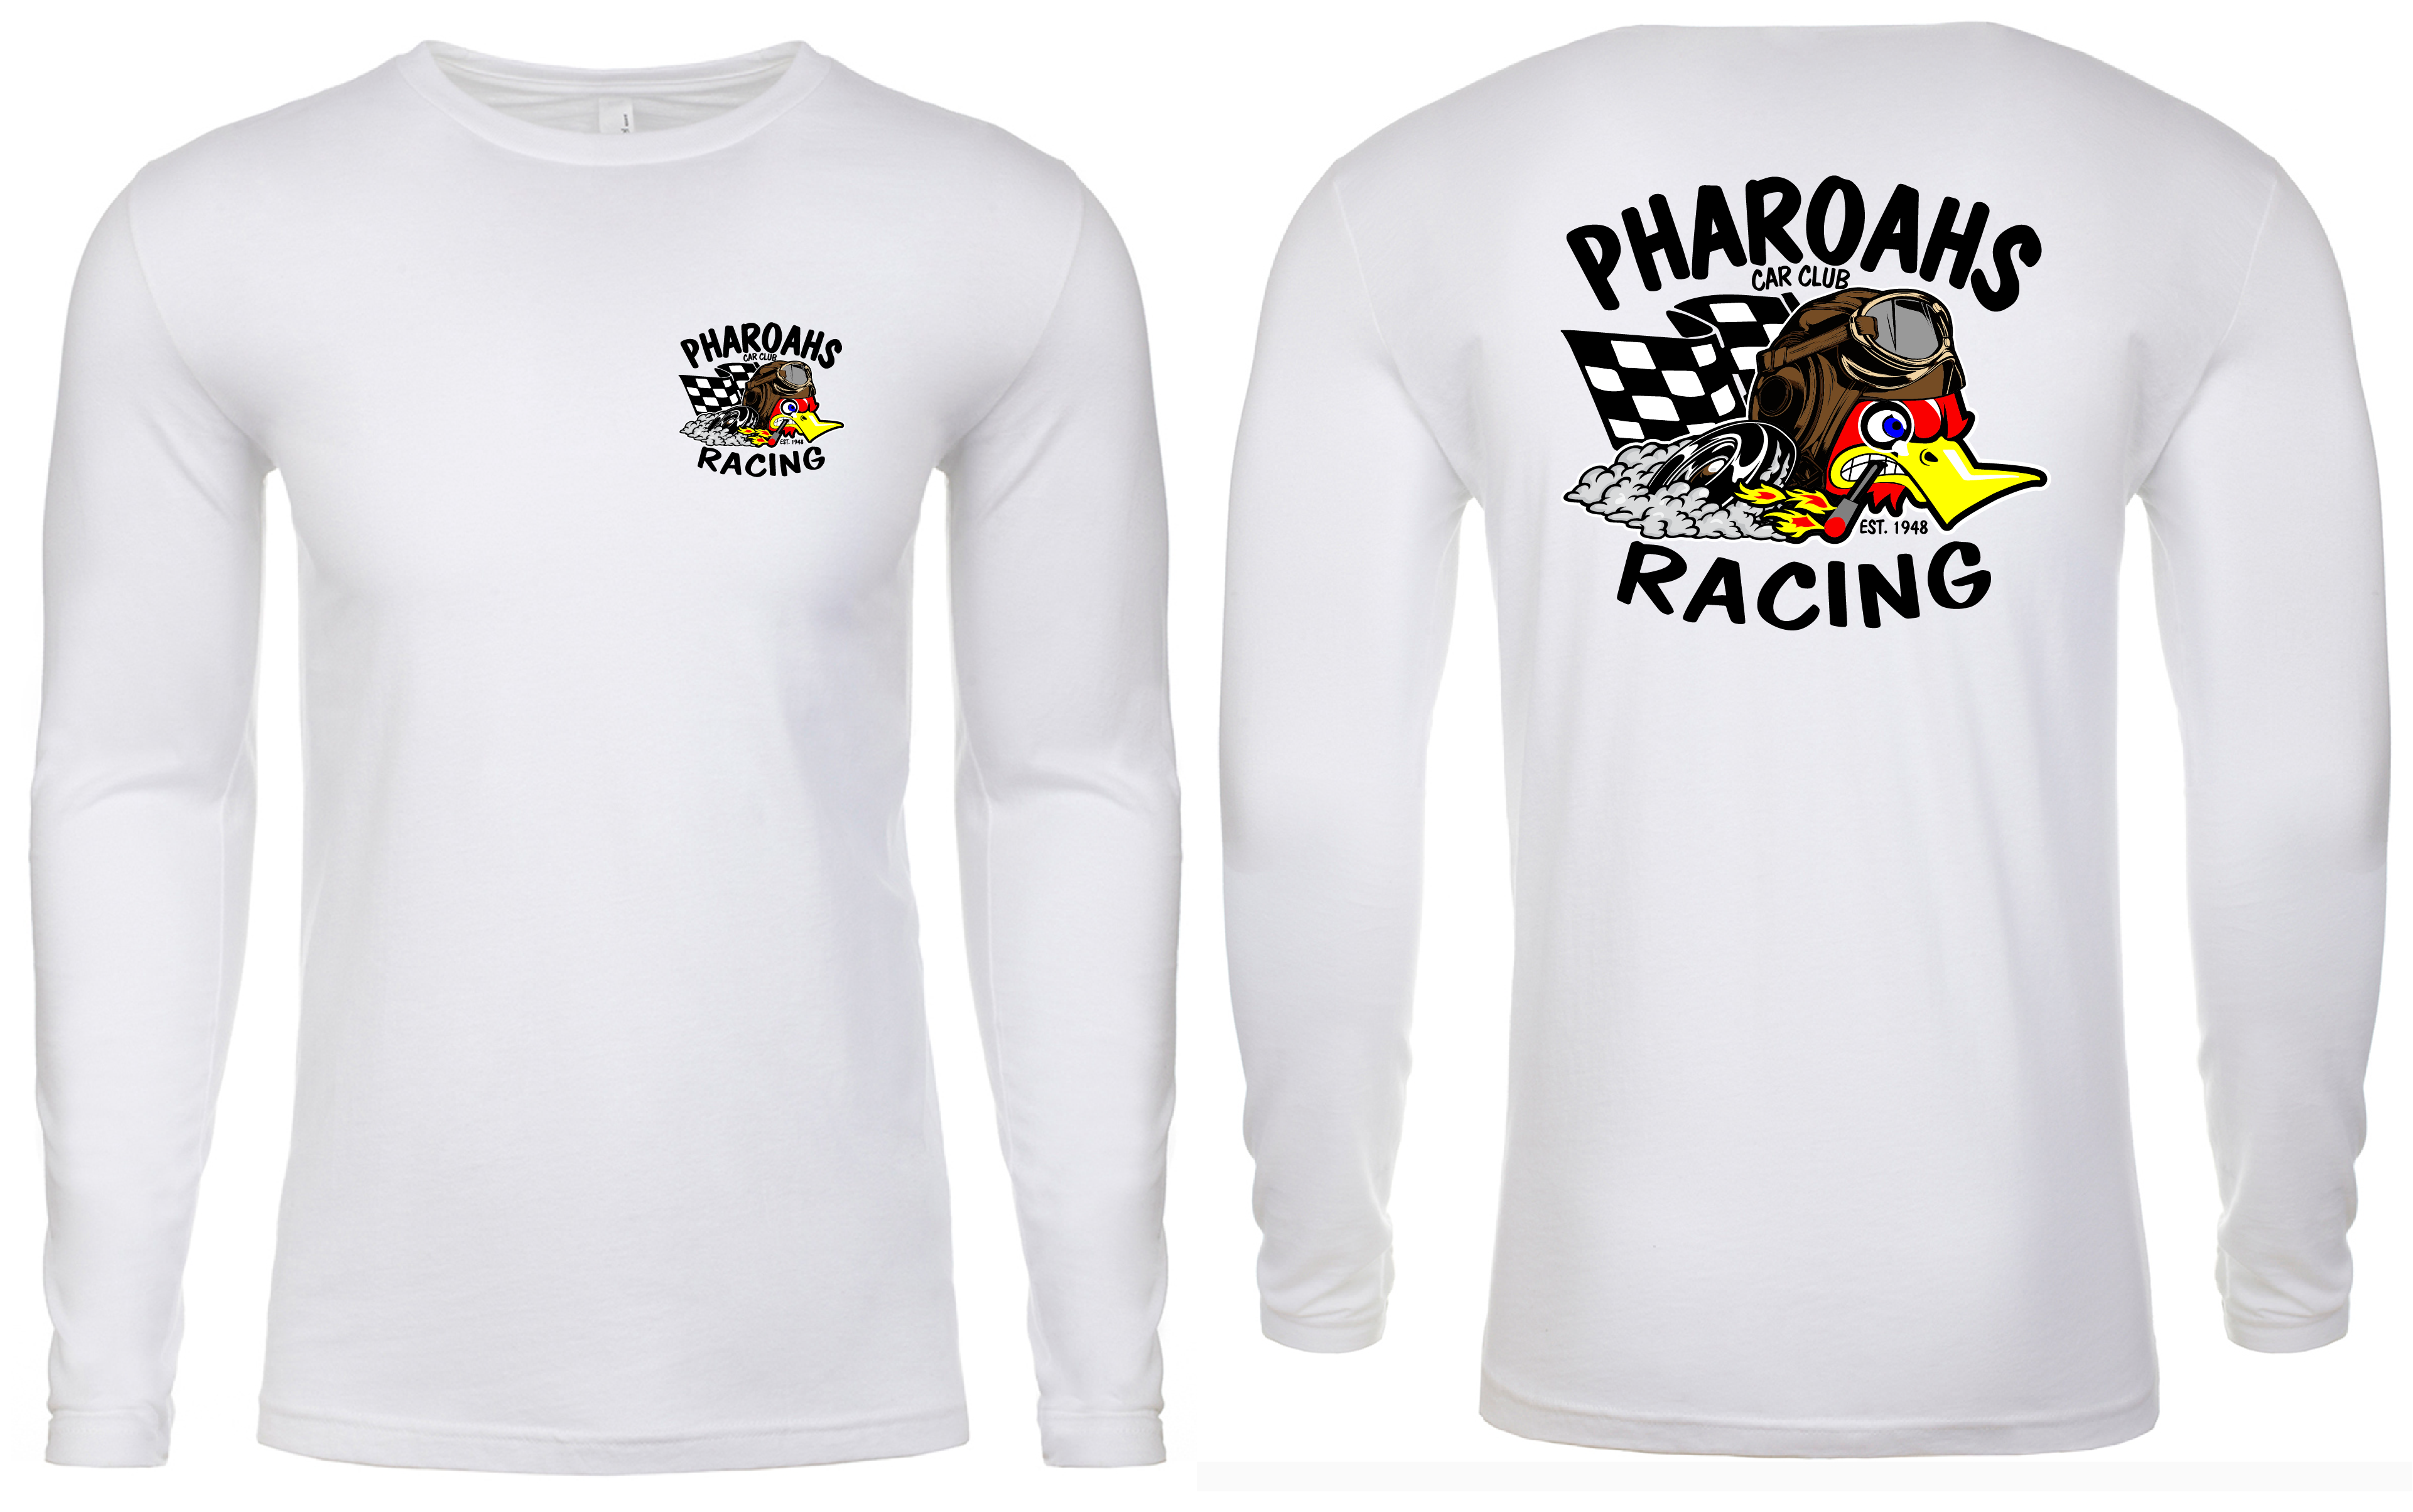 Pharoahs Racing Shirt